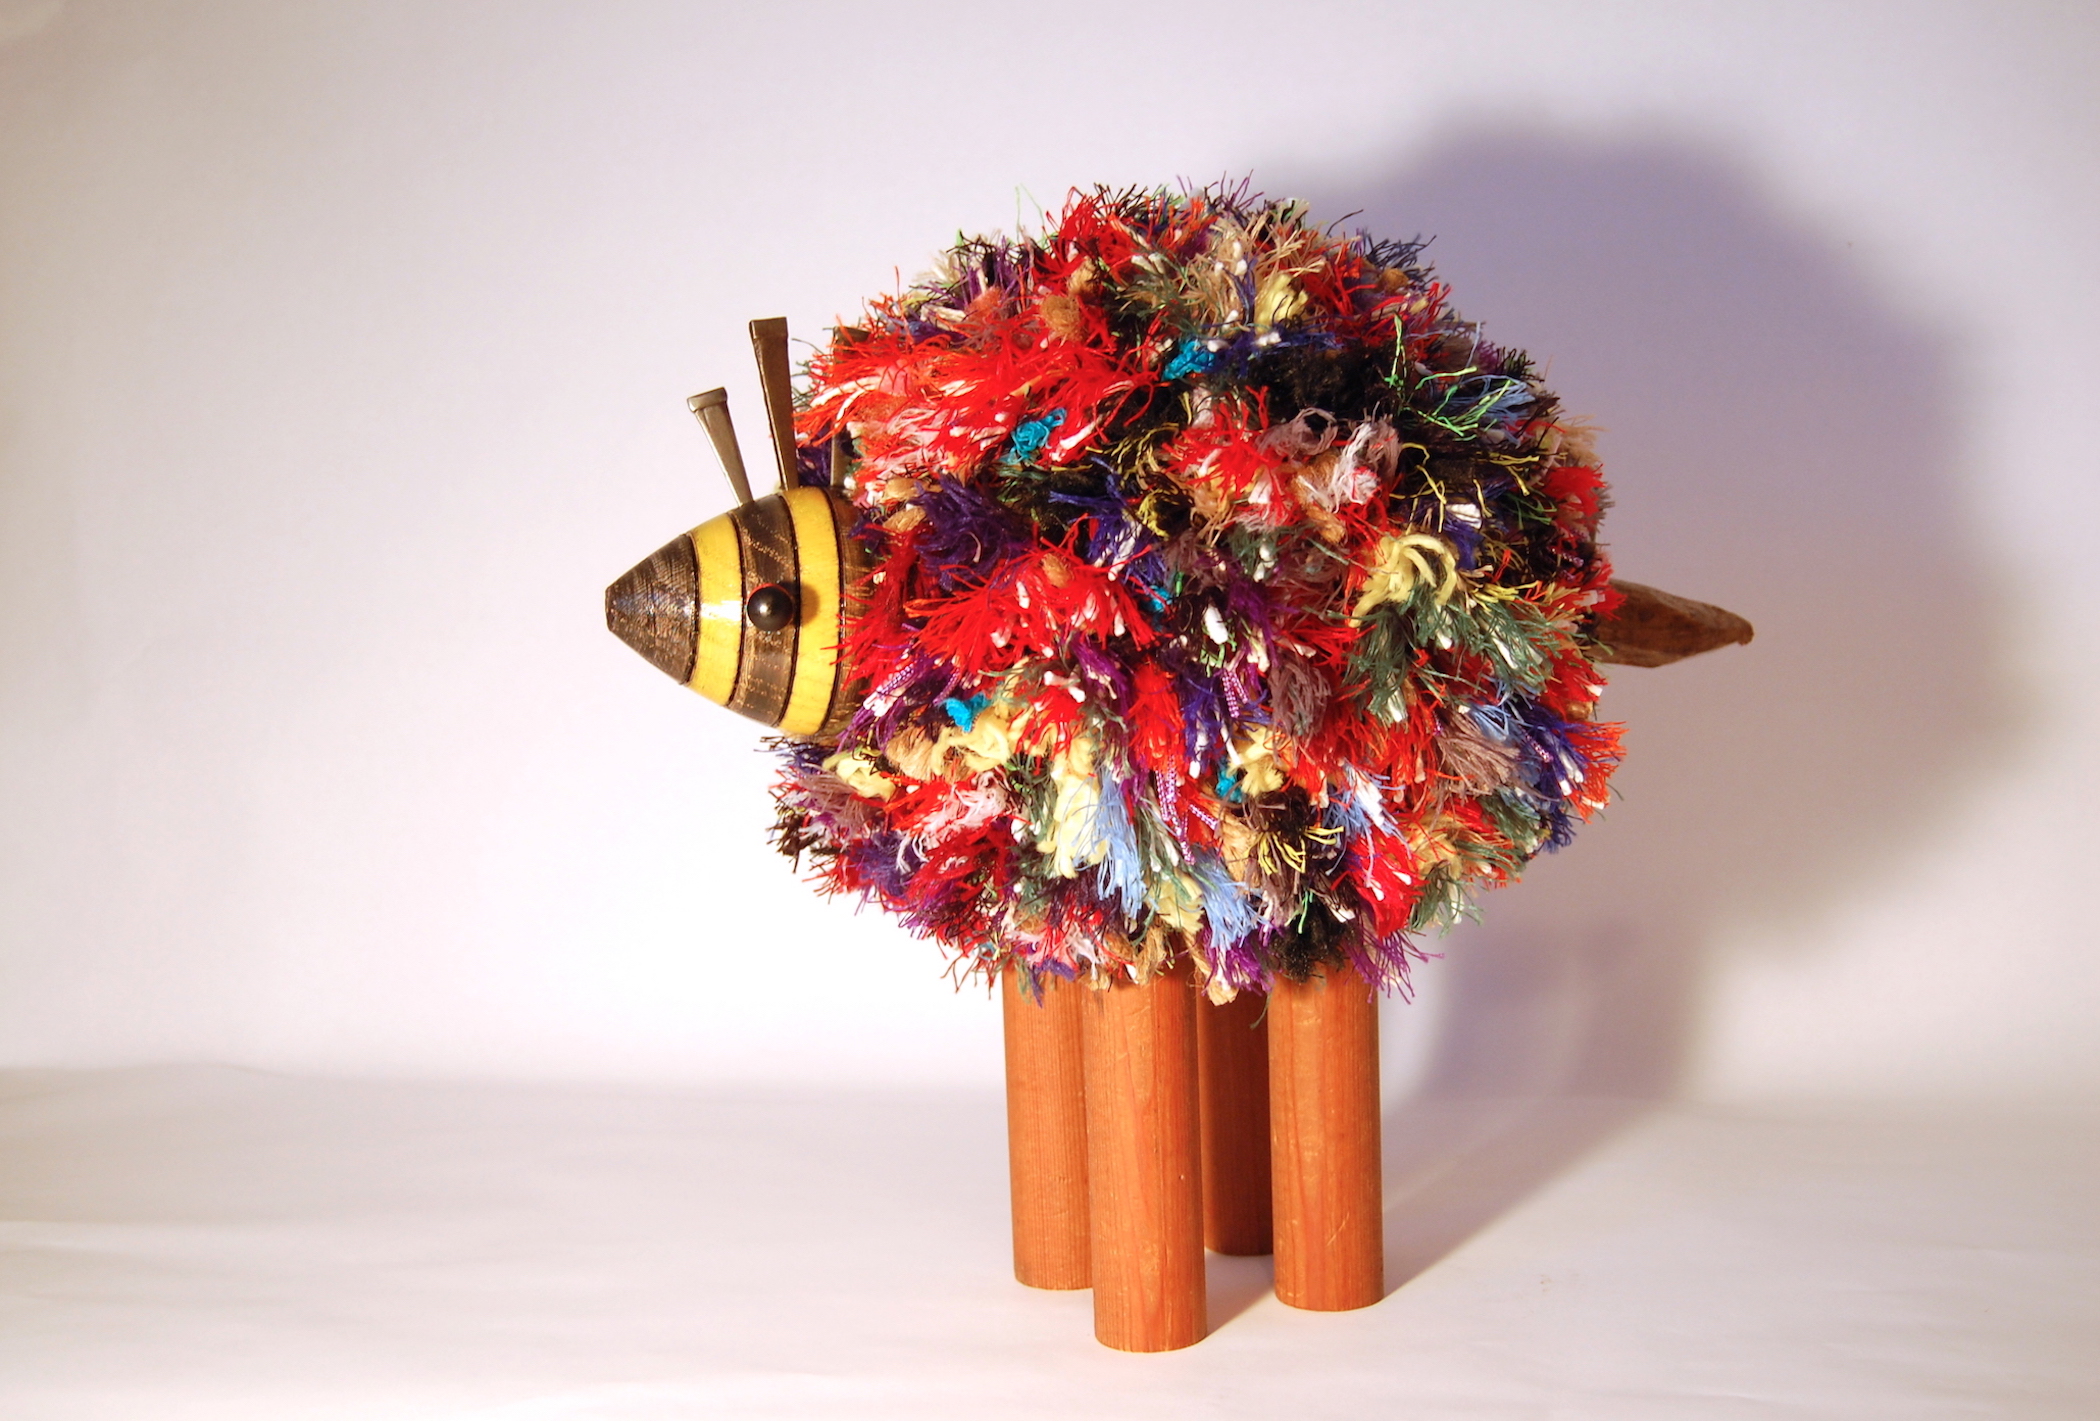 Round Bee, 15" x 12", $750